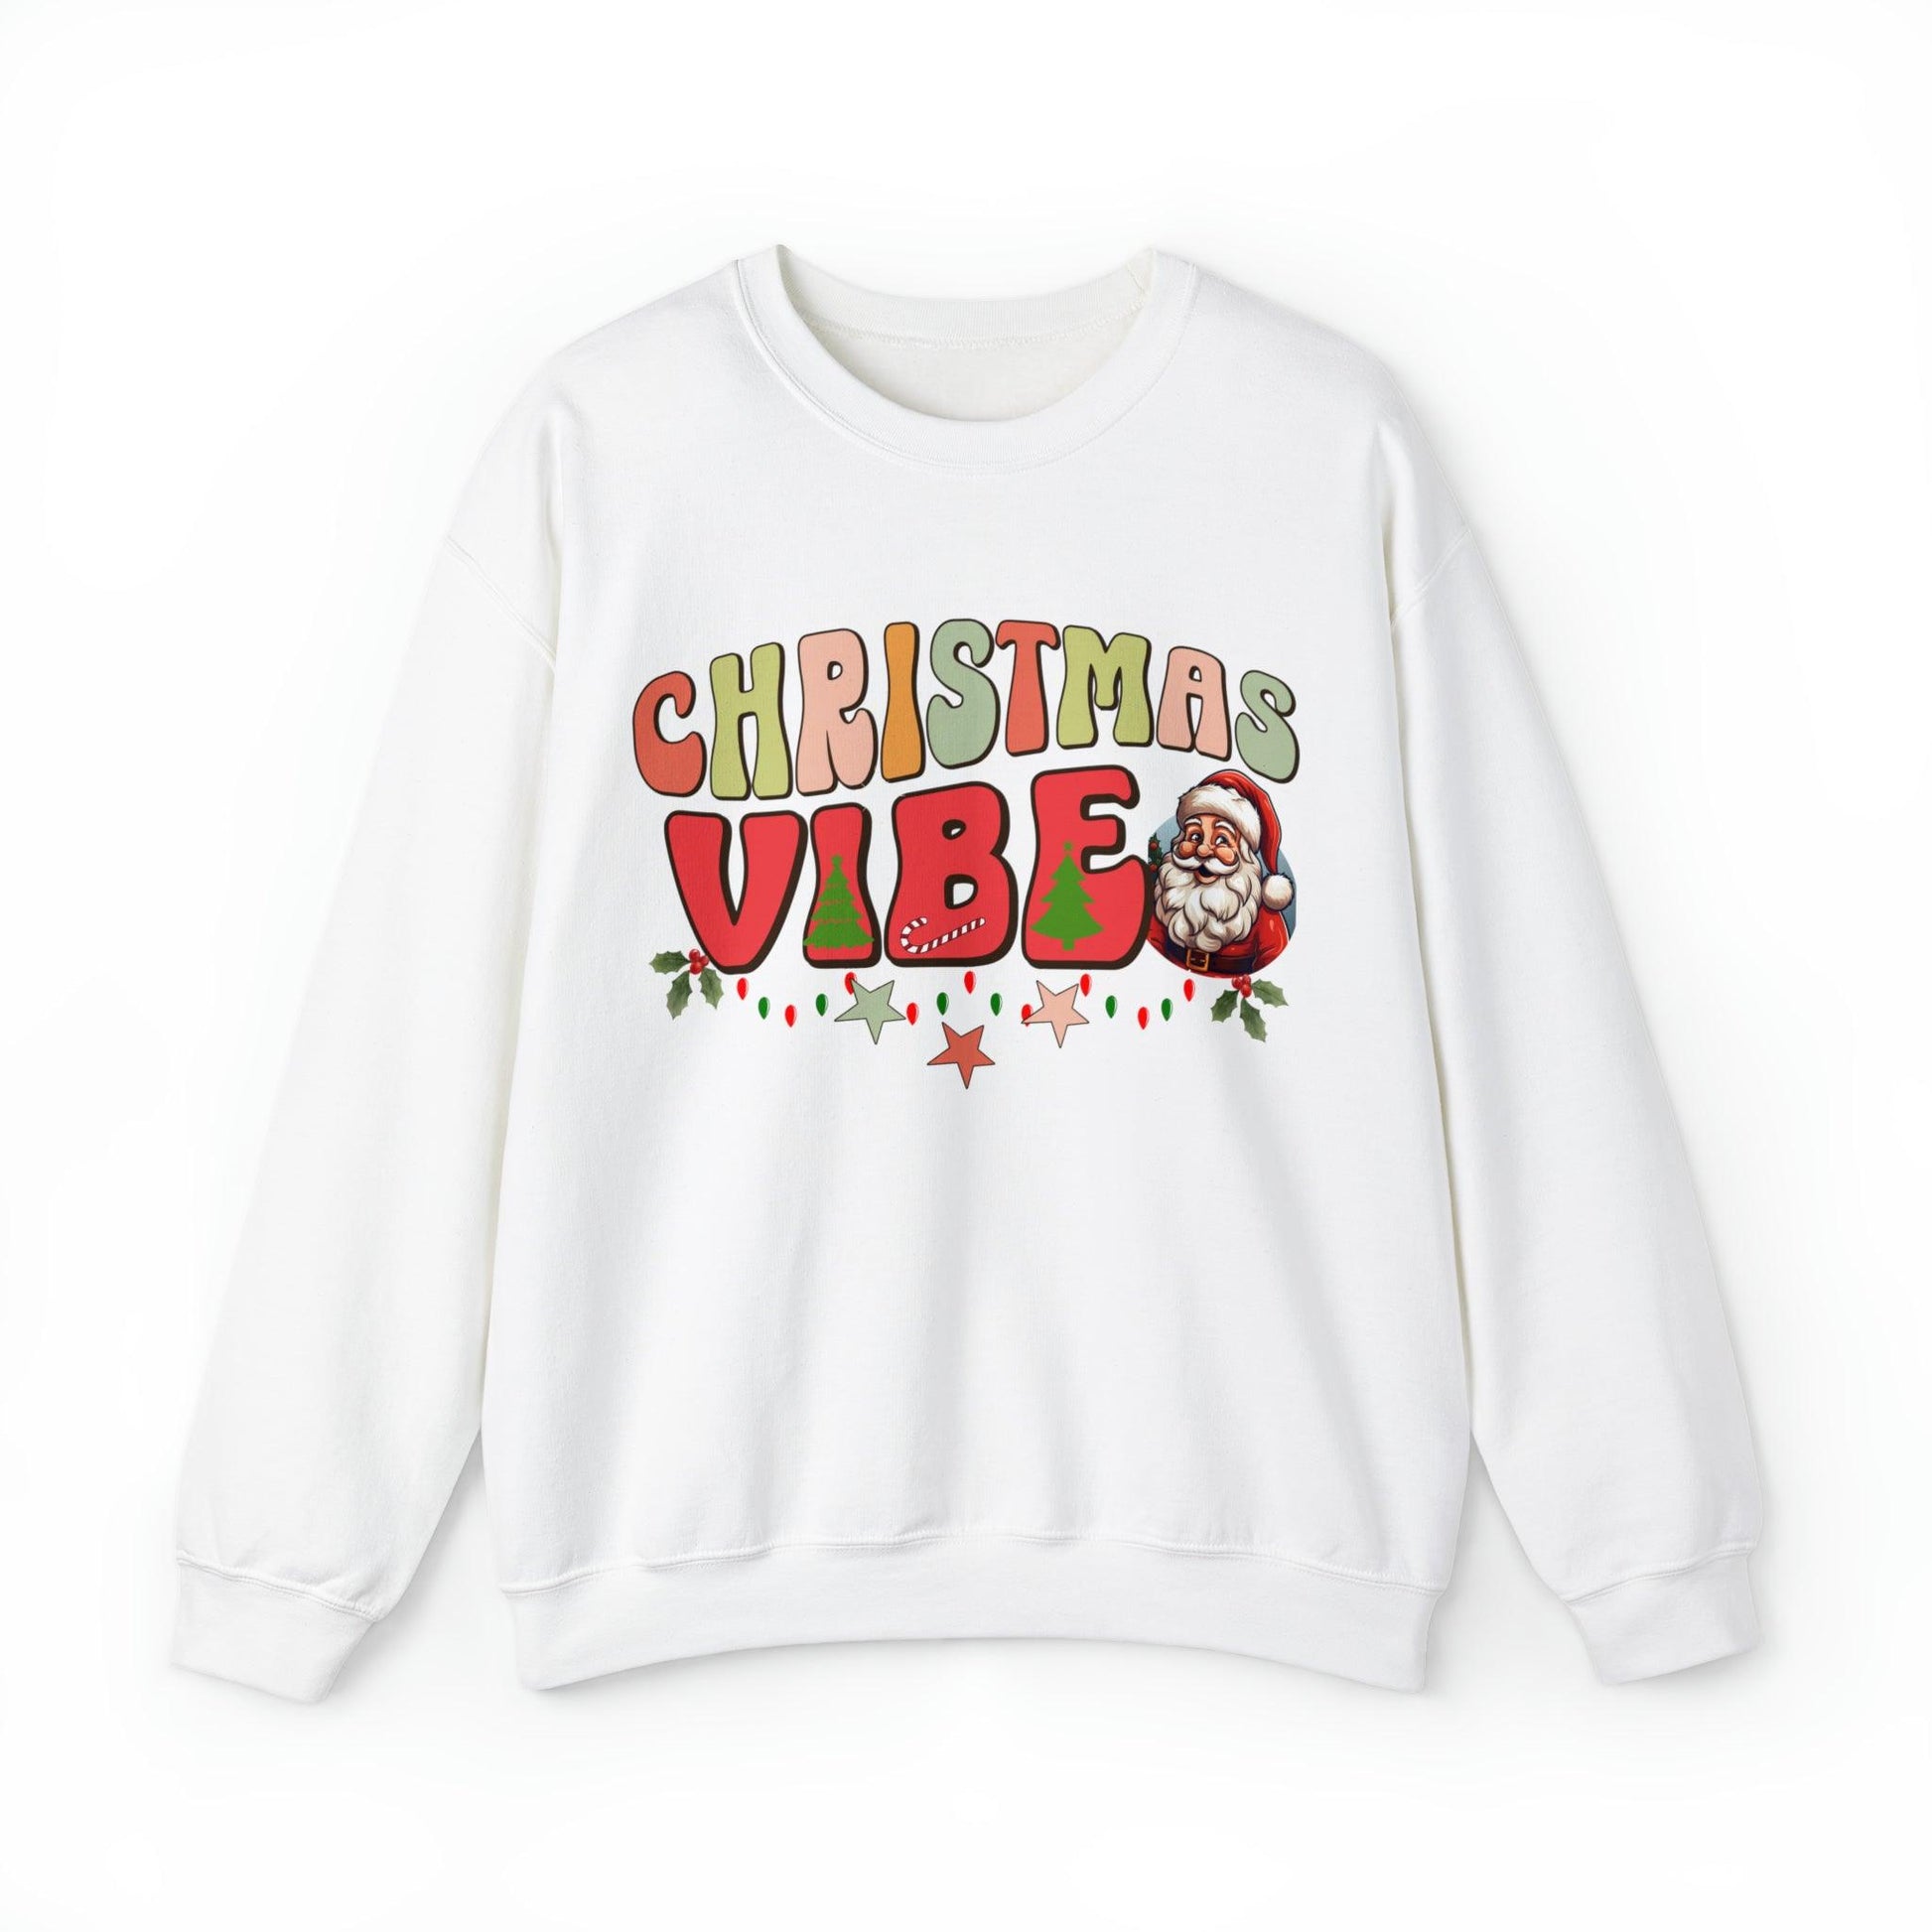 Cute Christmas Vibe Sweatshirt Funny Christmas Shirt Matching Shirts Christmas Vibes Holiday Shirt Cute Christmas Shirt - Giftsmojo